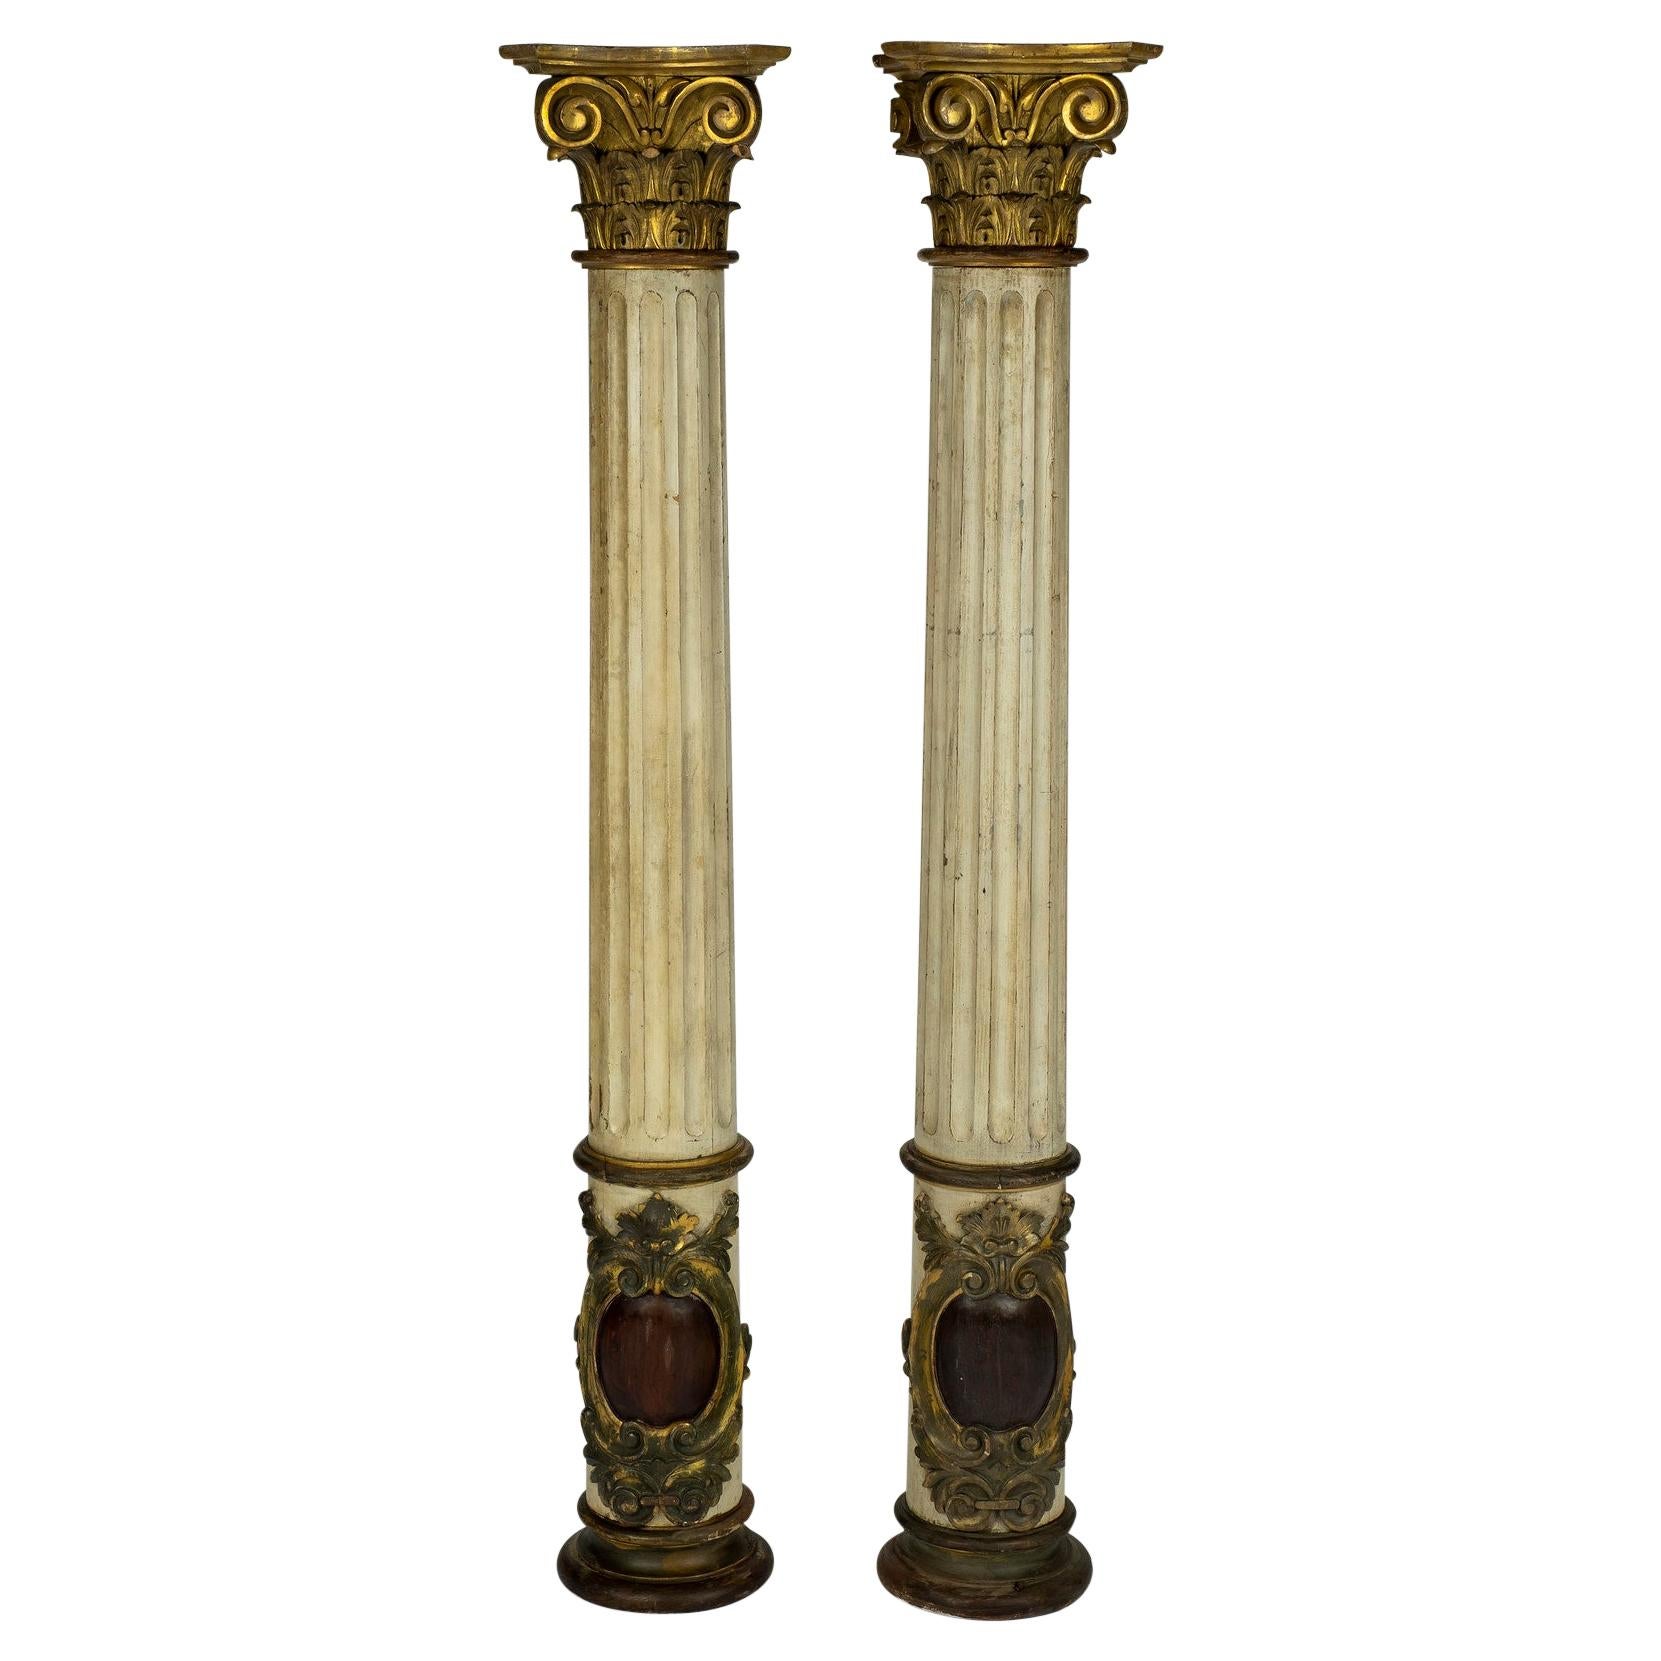 Paire de colonnes françaises du 19ème siècle en bois peint et doré